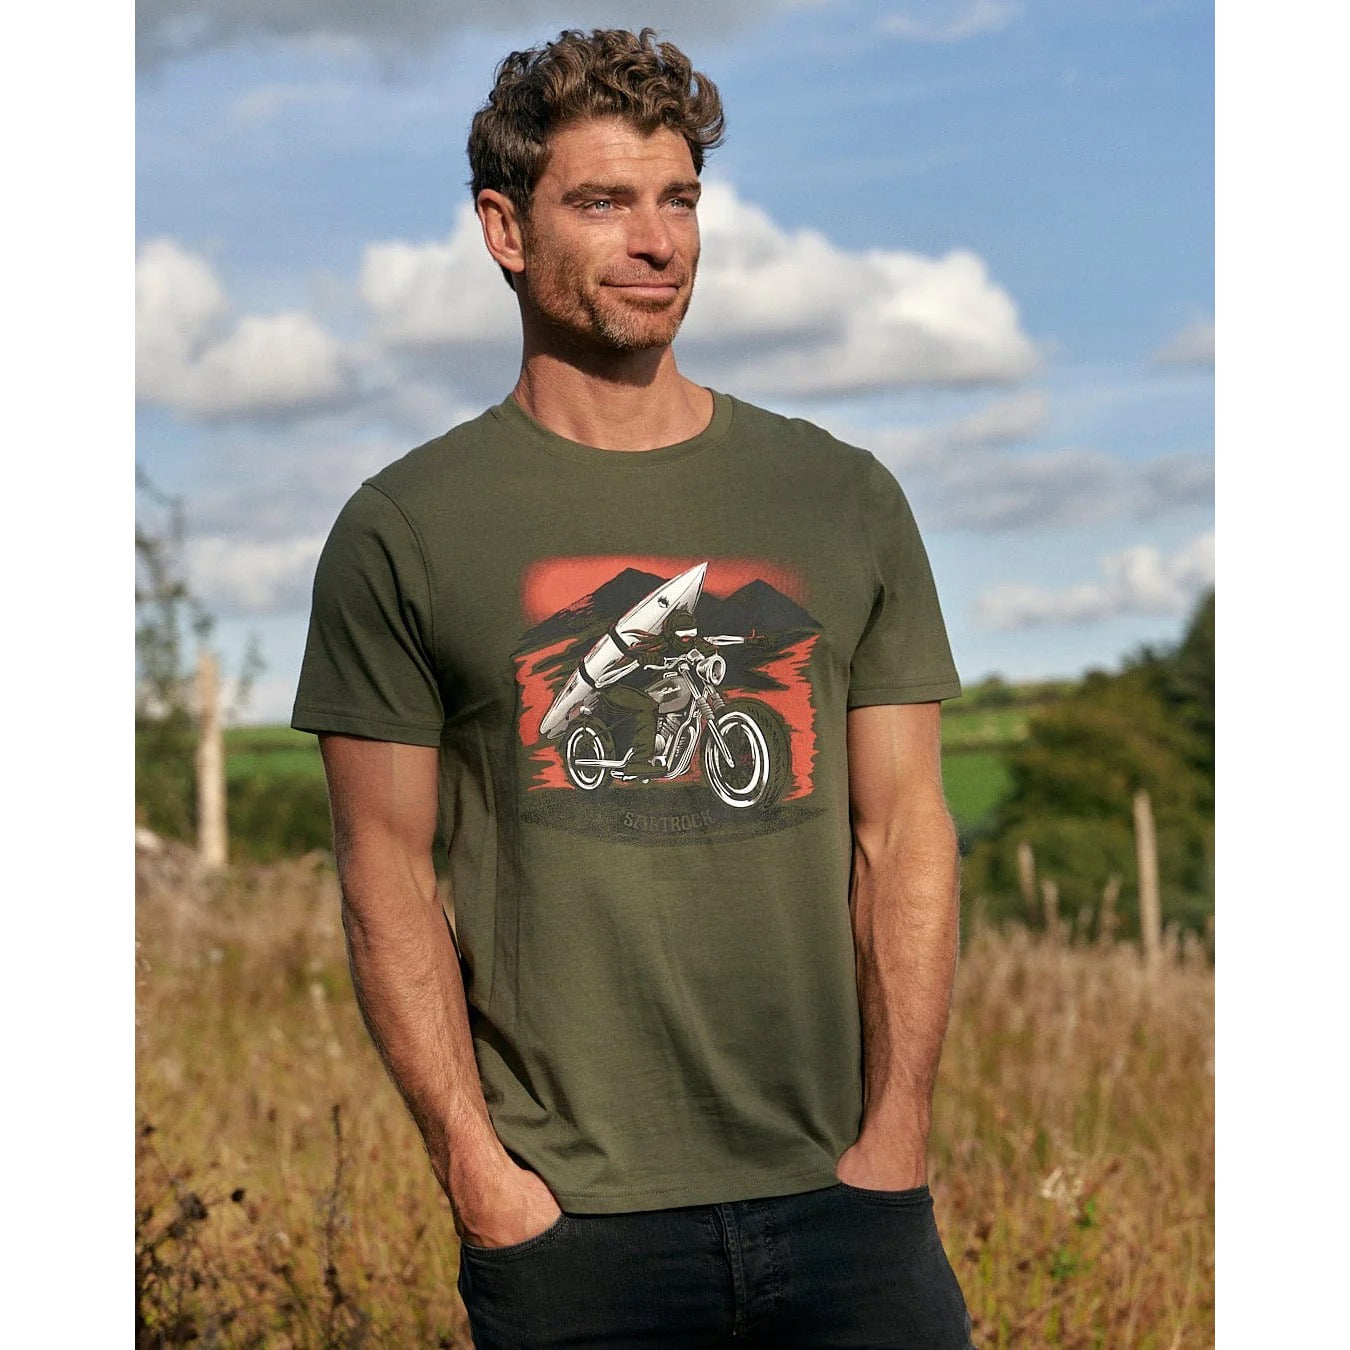 Saltrock Mens Skelly Rider T-Shirt Clothing SMALL ADULT / Khaki,MEDIUM ADULT / Khaki,LARGE ADULT / Khaki,XL ADULT / Khaki